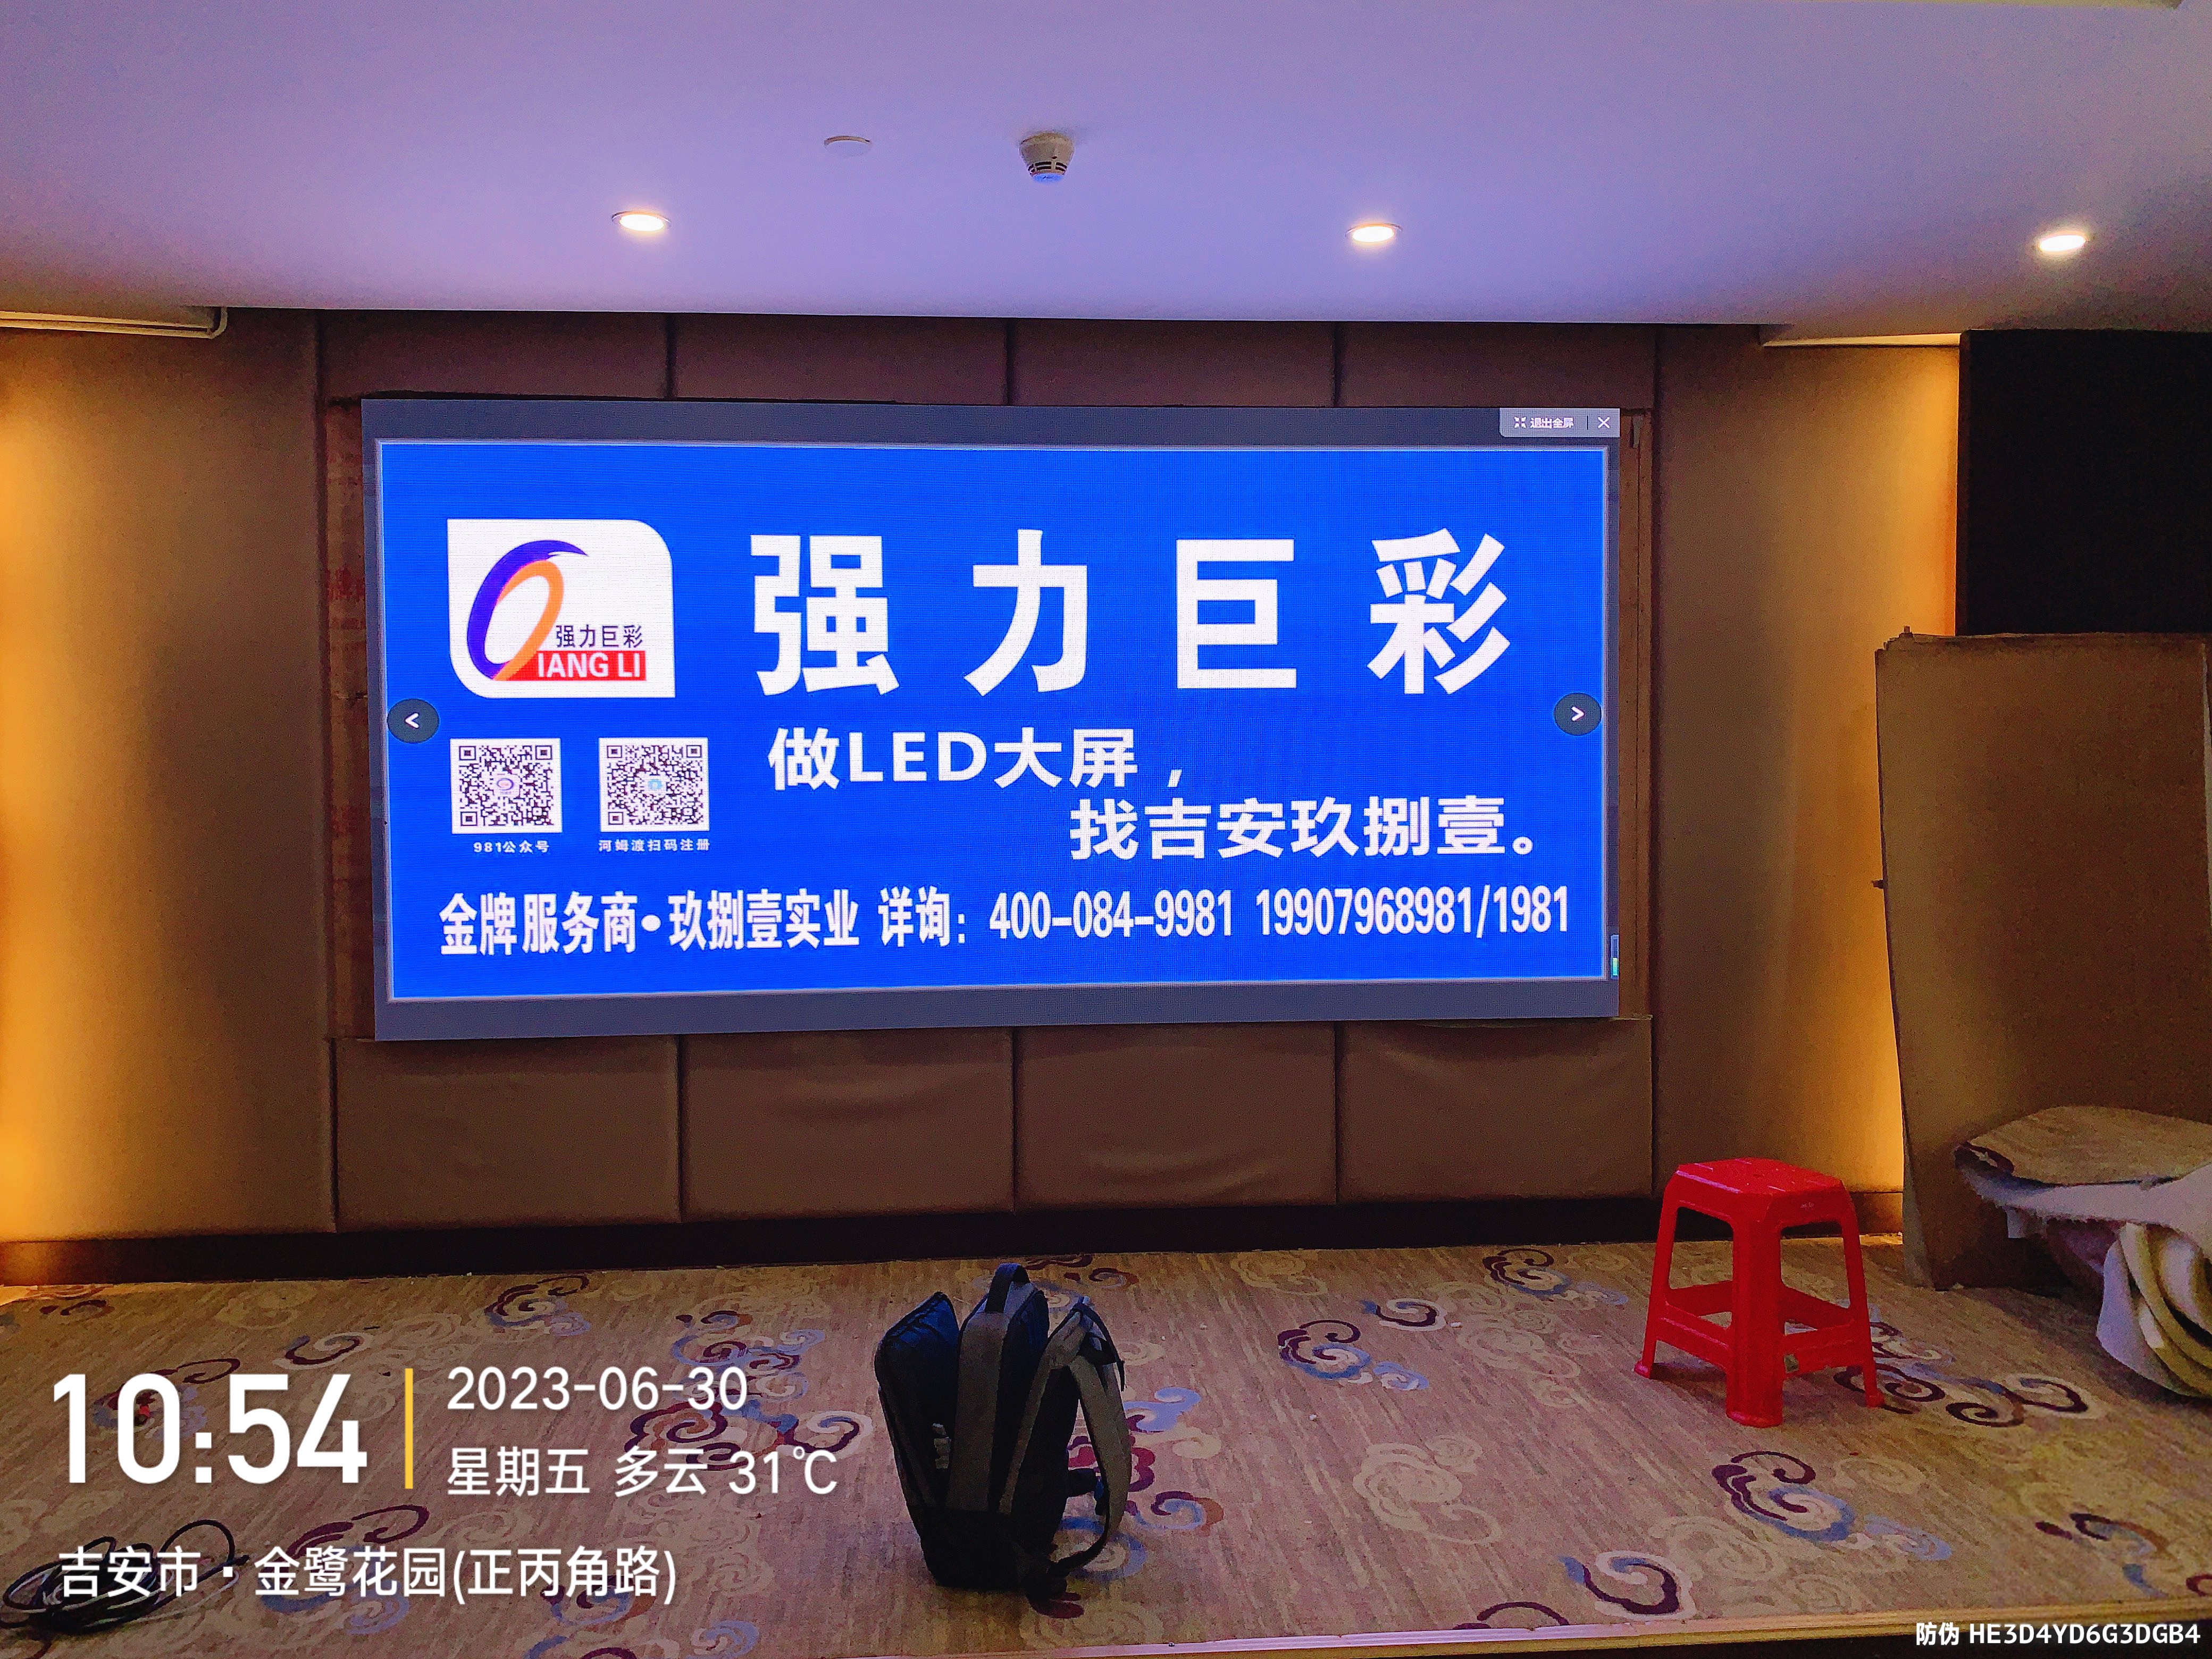 印象酒店5m²丰视P2  LED显示屏